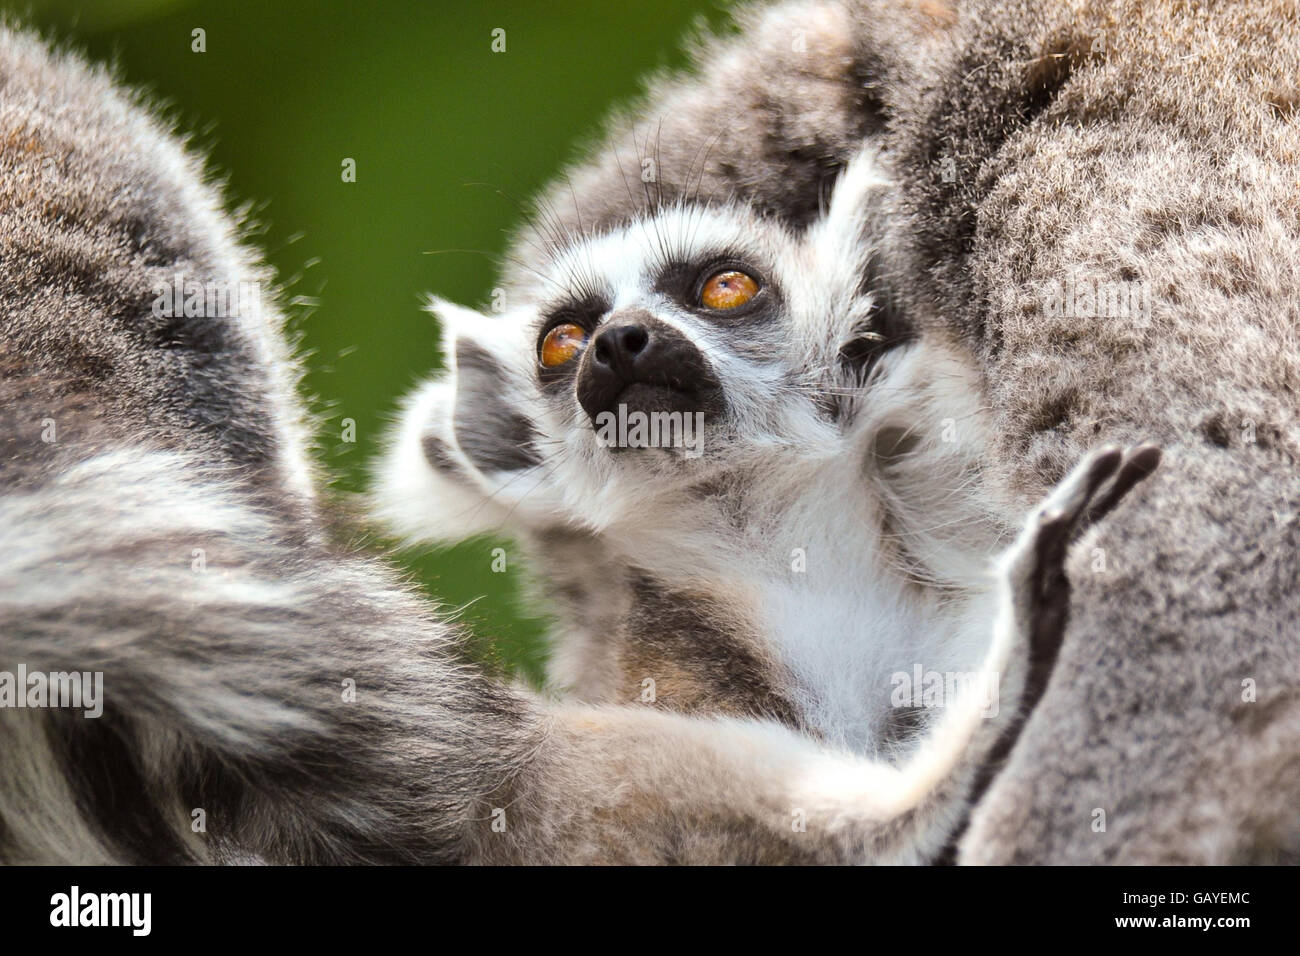 Warbie, ein sieben Wochen alter Ringschwanz-Lemur, der am 10. Mai dieses Jahres im Zoo Bristol geboren wurde. Stockfoto